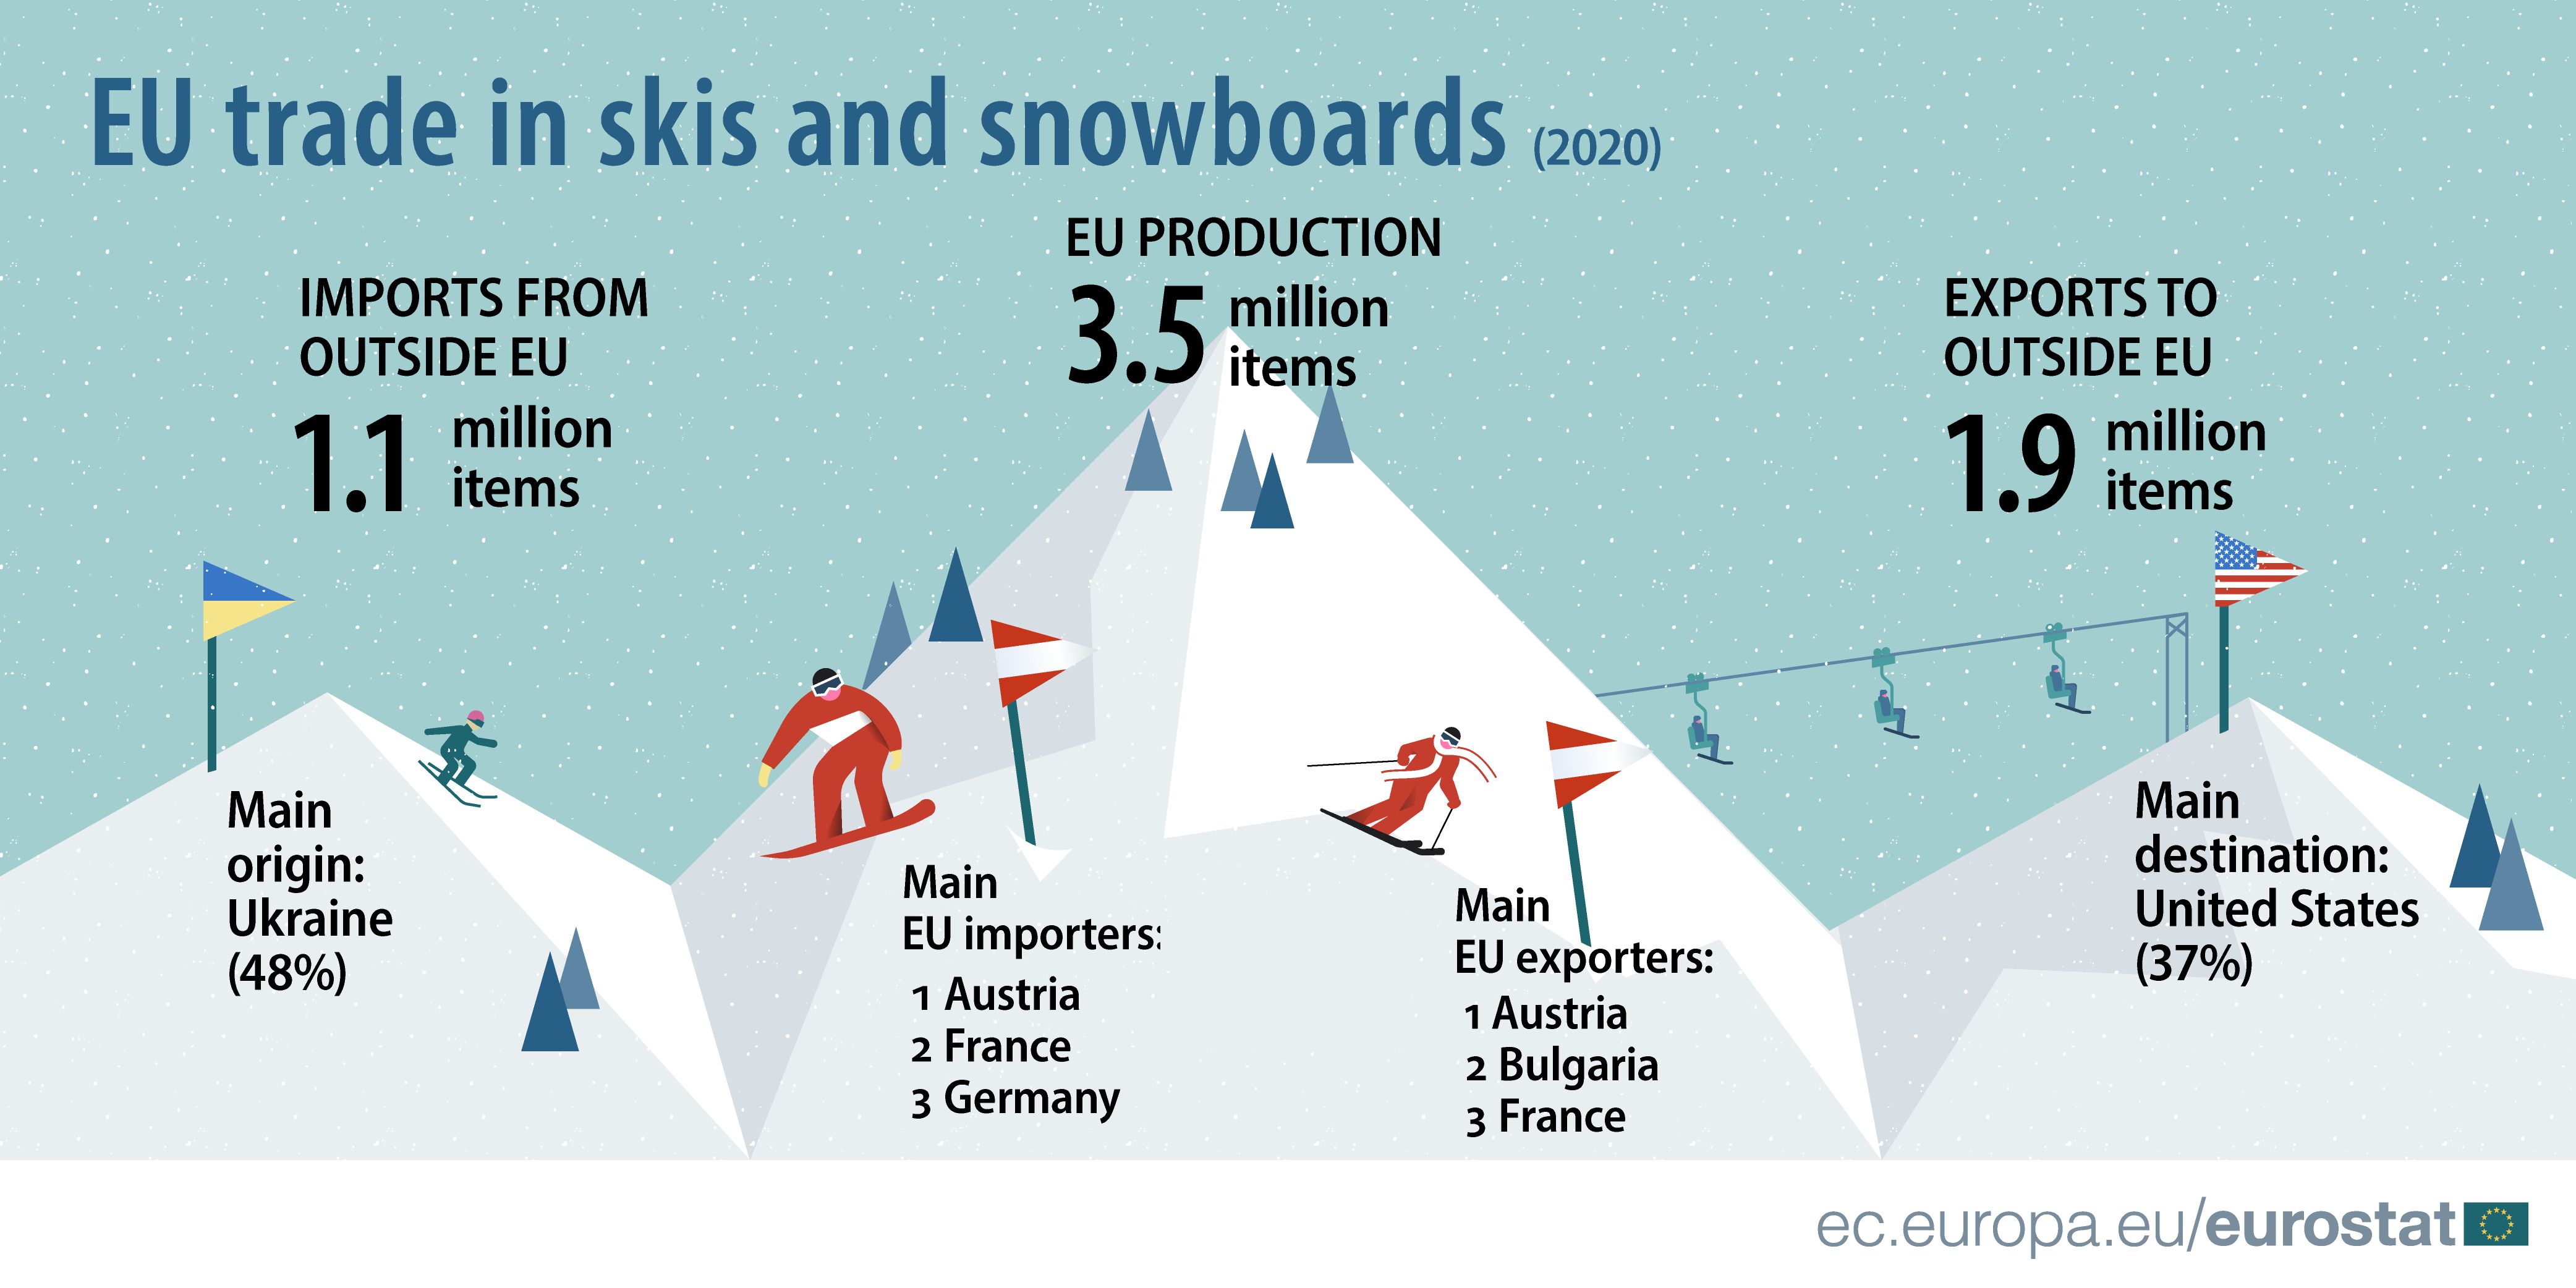 Paises que más esquís fabrican en el mundo